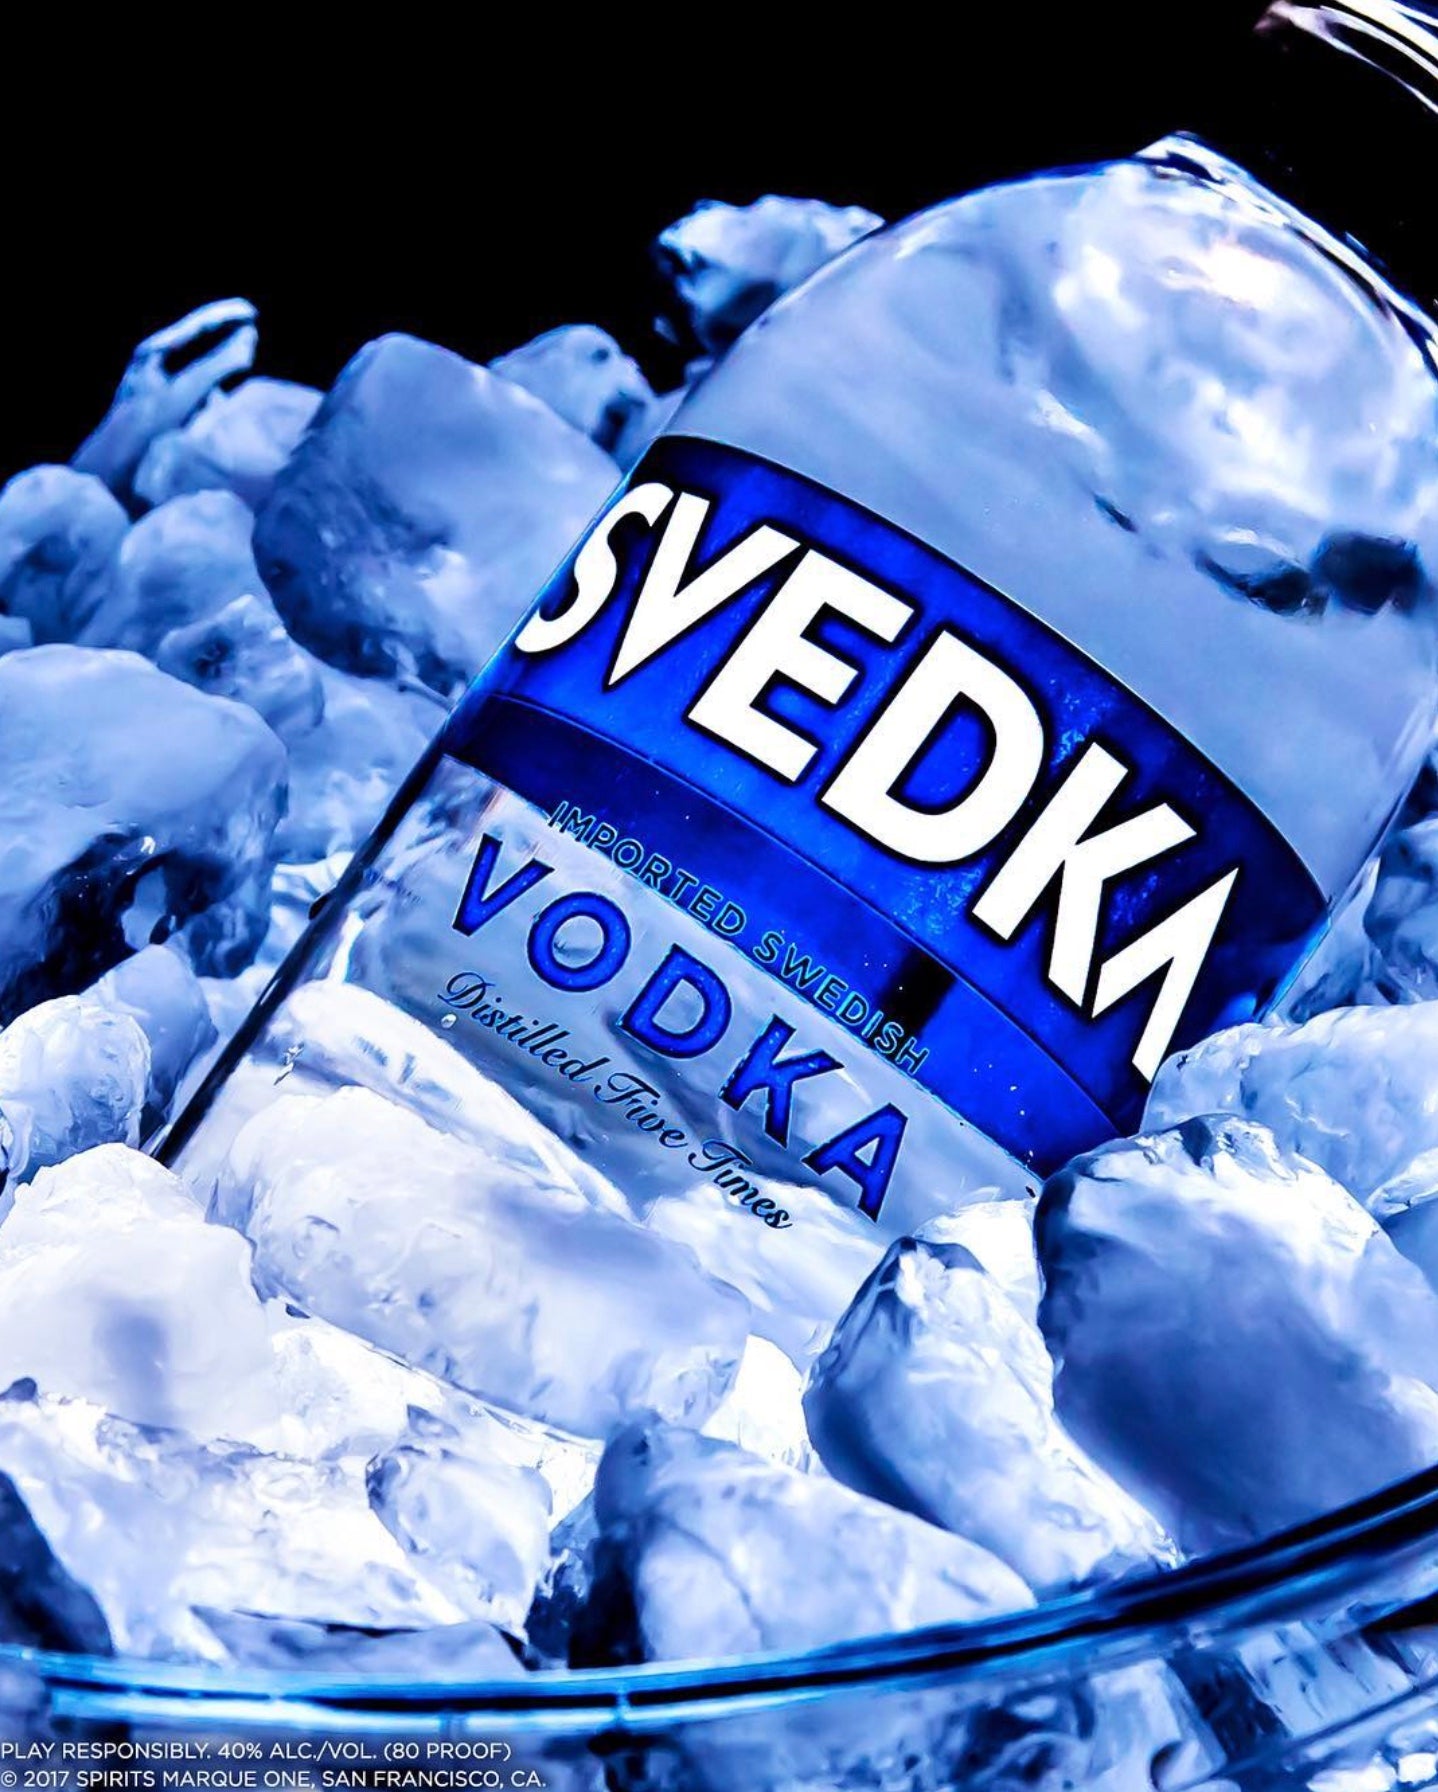 SVEDKA Vodka